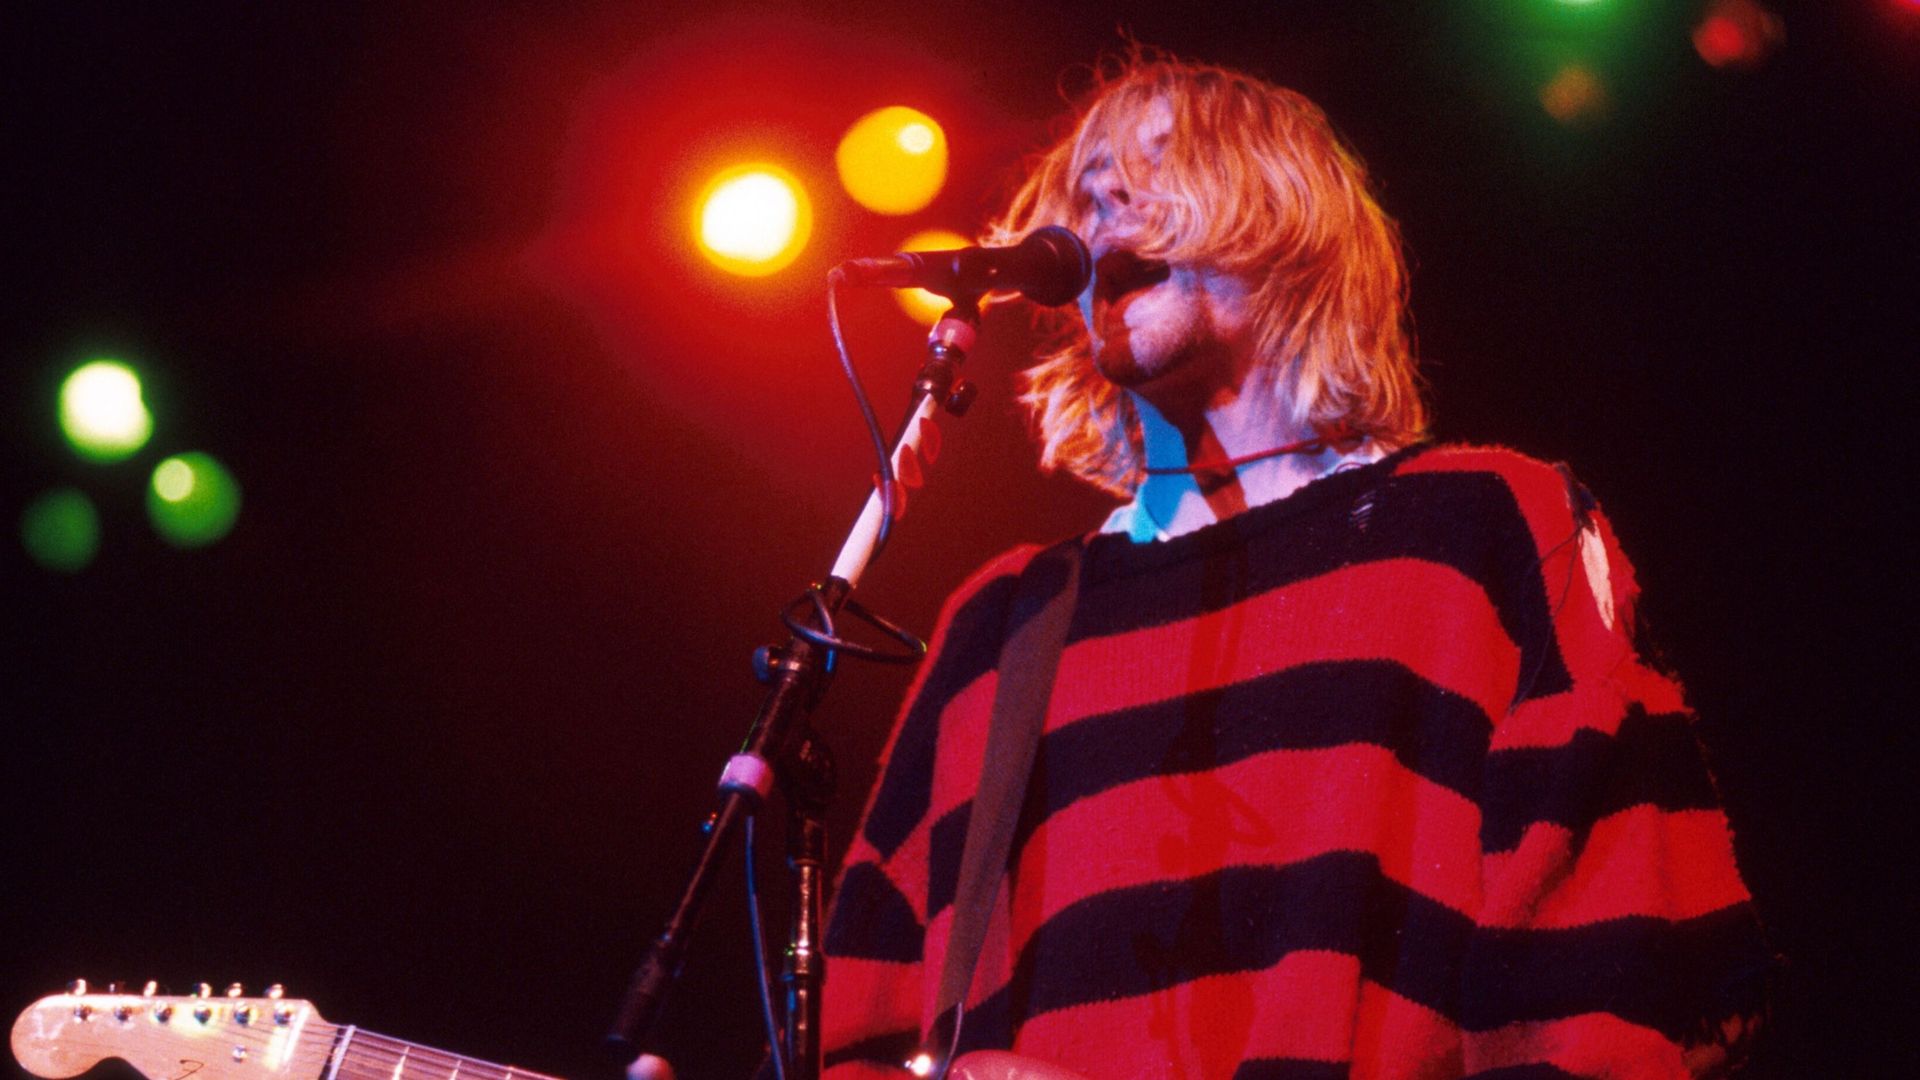 Affaire "Nevermind" : nouvelle plainte déposée contre Nirvana